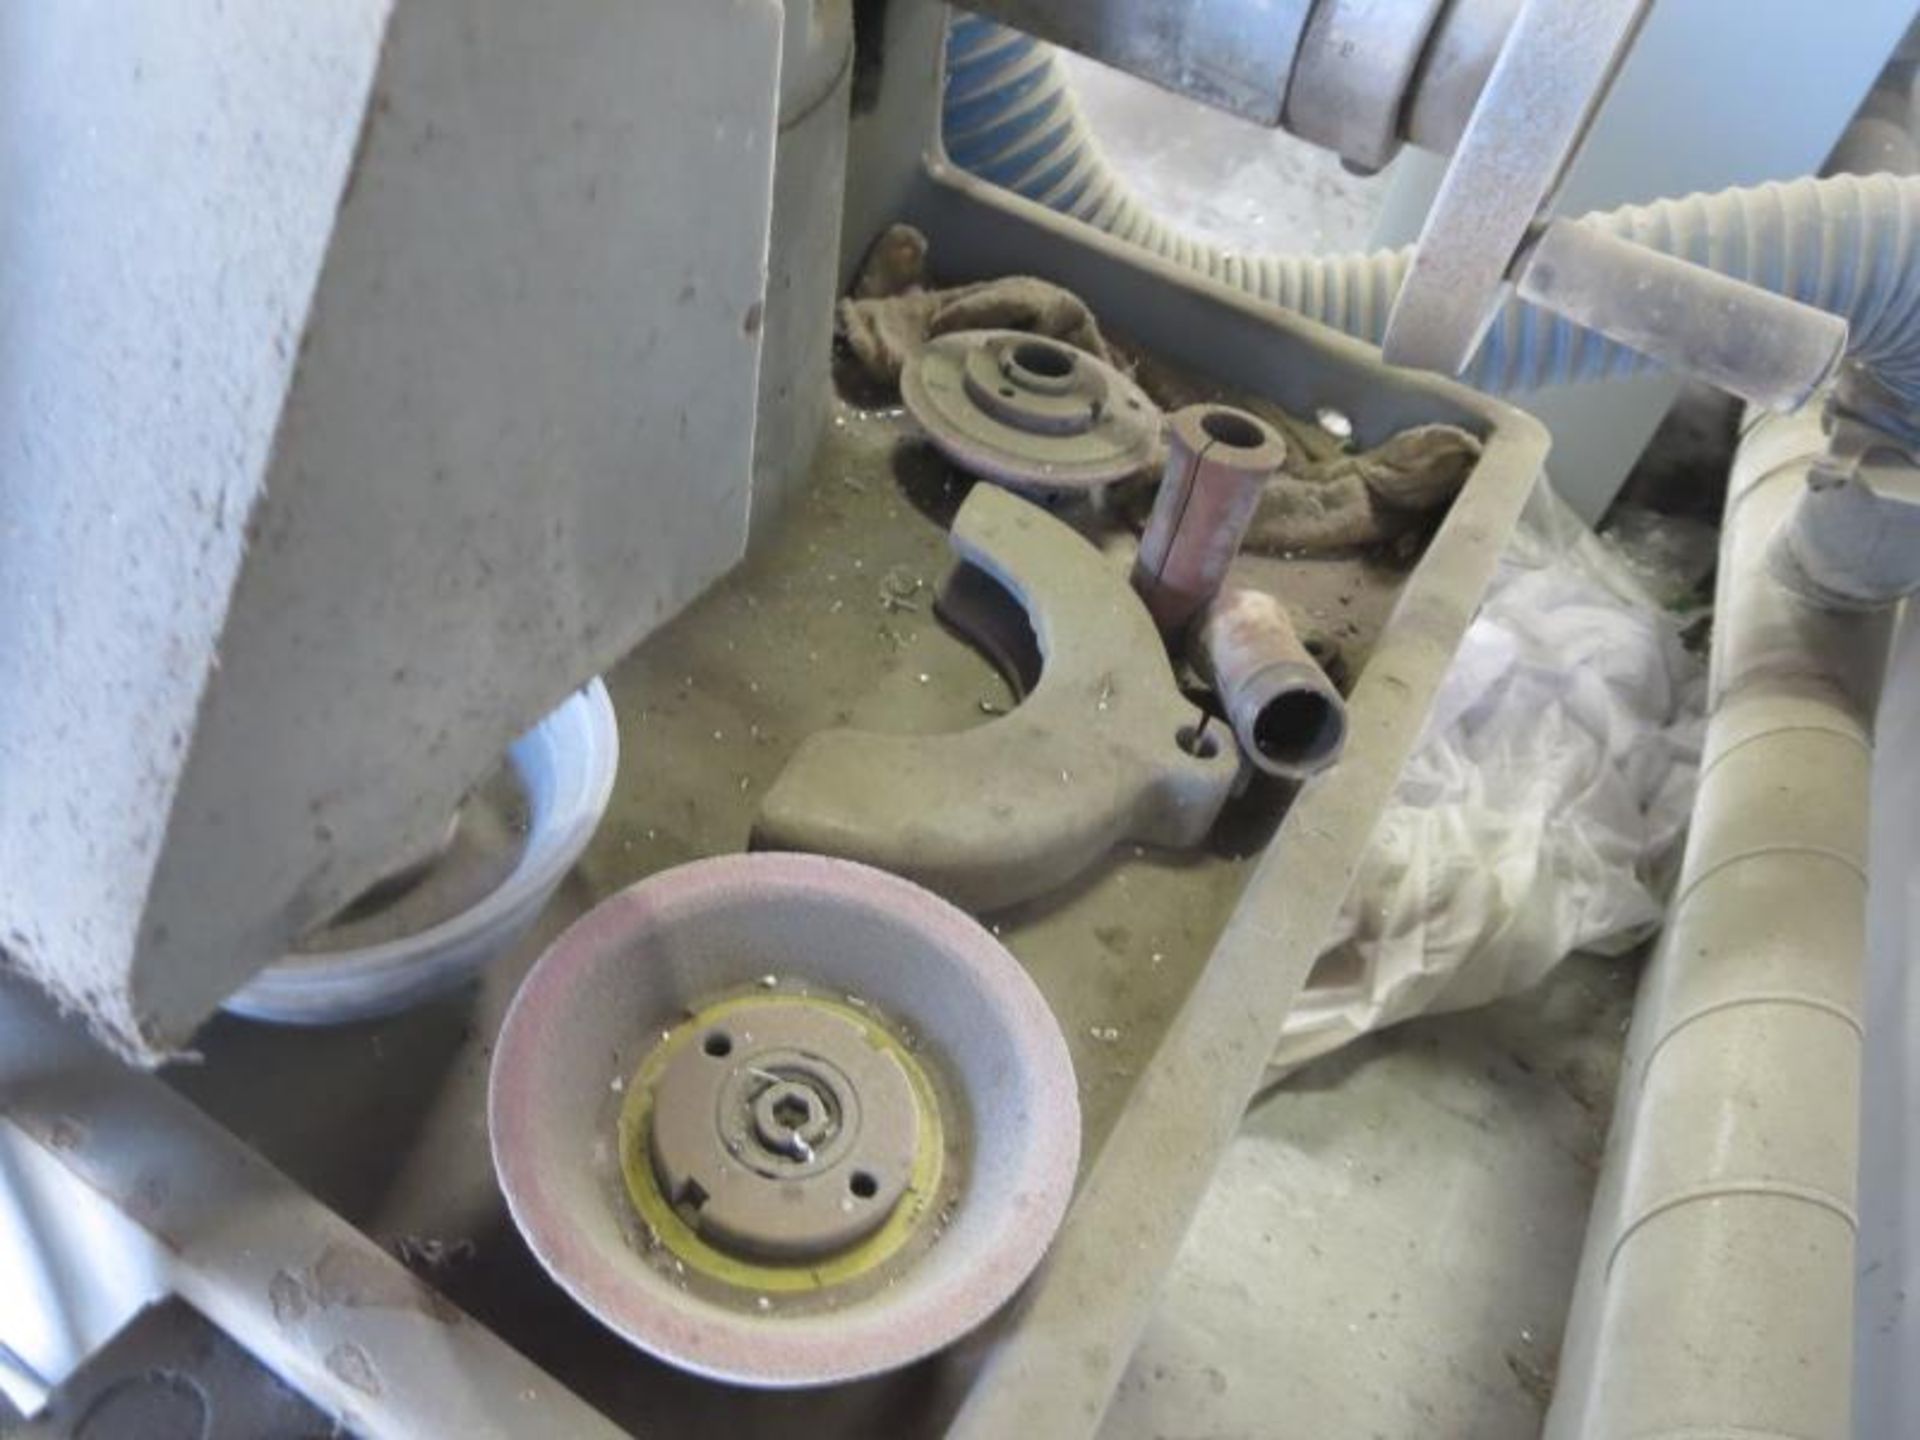 Cincinnati Milacron Tool Cutter & Grinder, 6in grinding wheel 3837rpm, 3 1/2" grinding wheel - Image 7 of 8